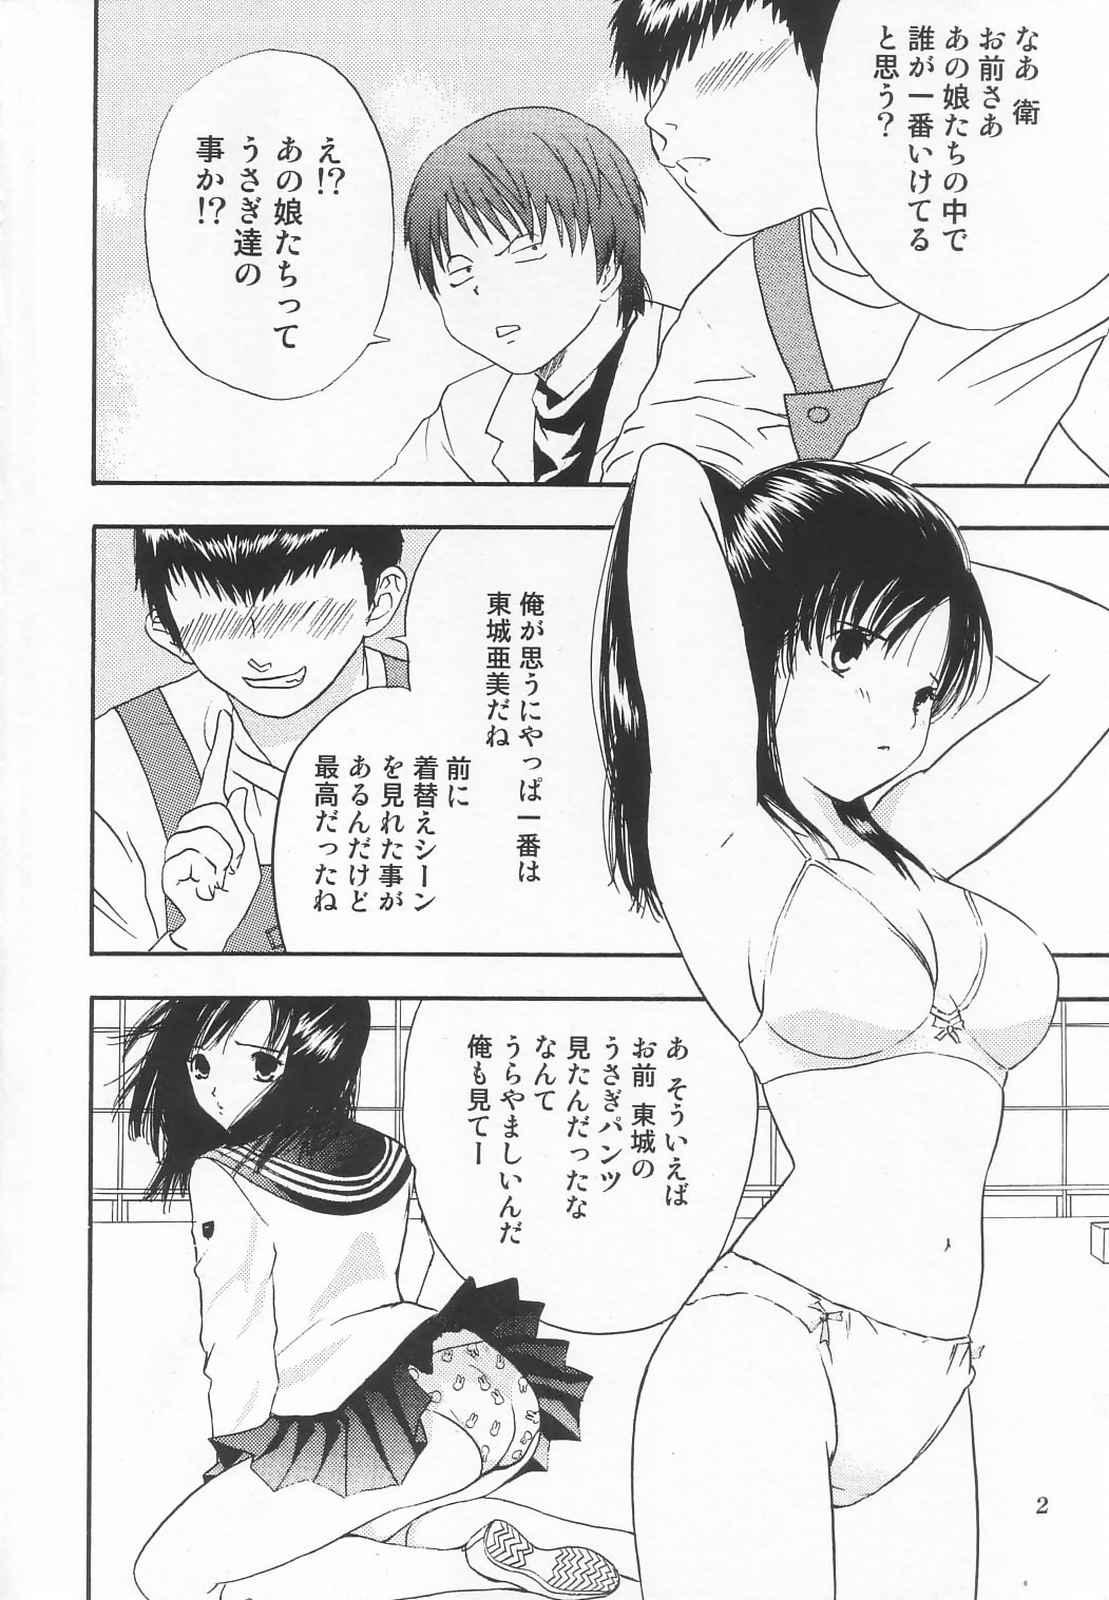 Messy Tokusatsu Magazine x 2003 Fuyu Gou - Sailor moon Ichigo 100 No Condom - Page 4